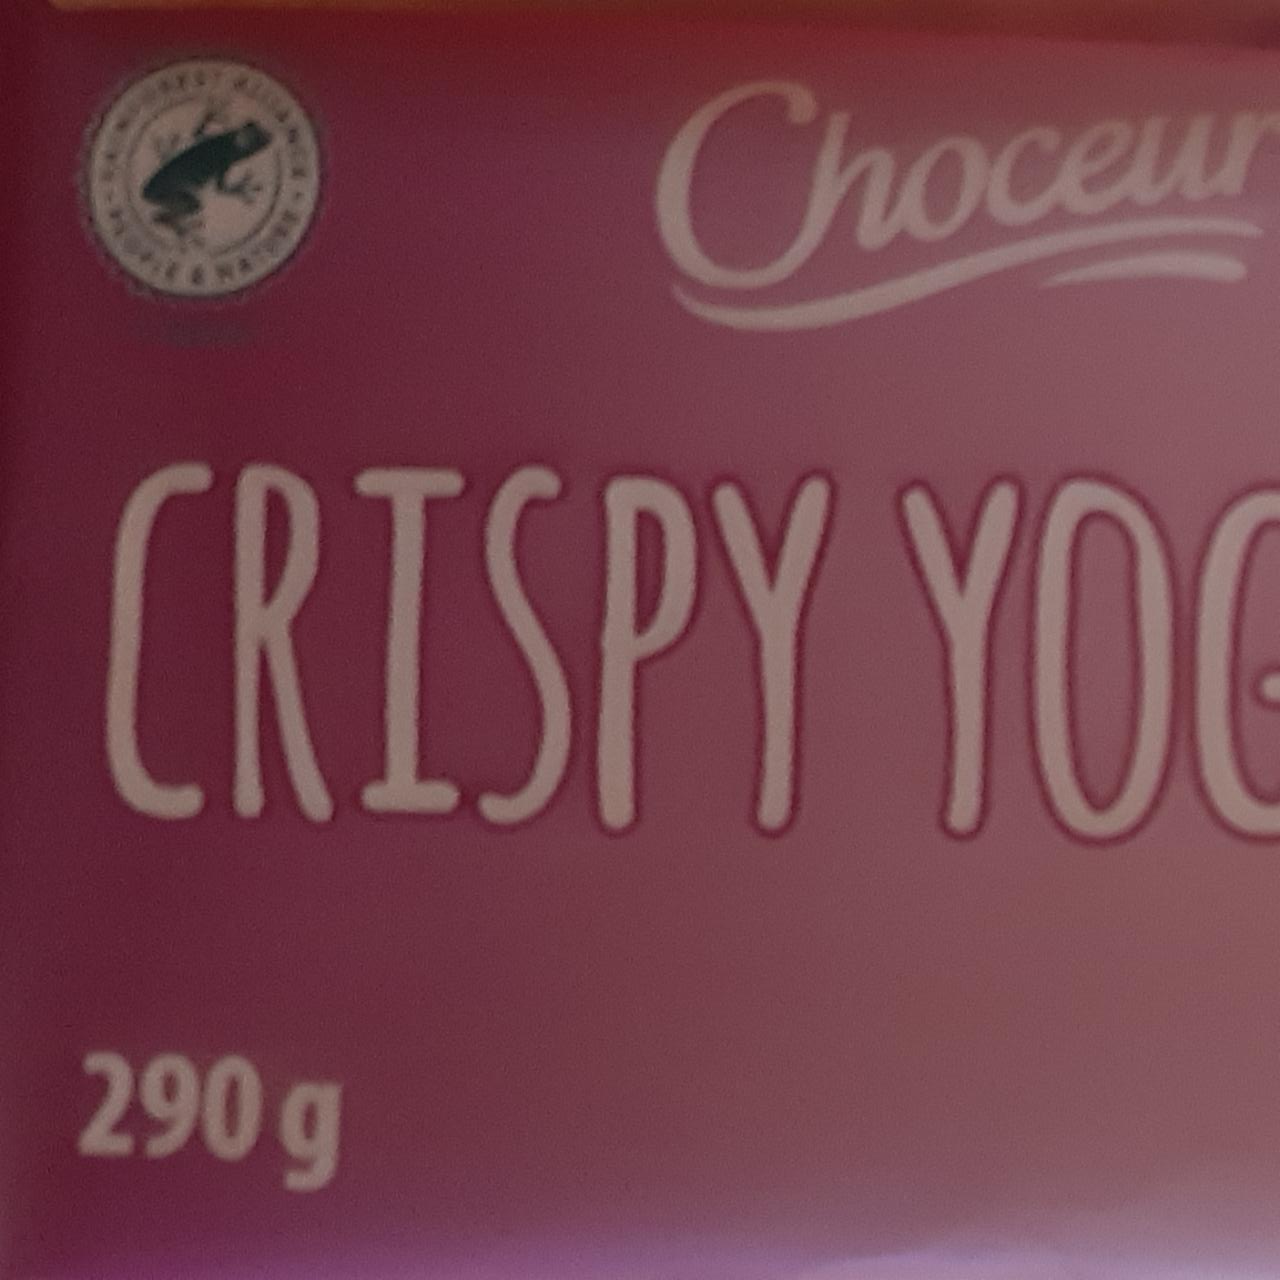 Képek - Crispy Yoghurt Choceur